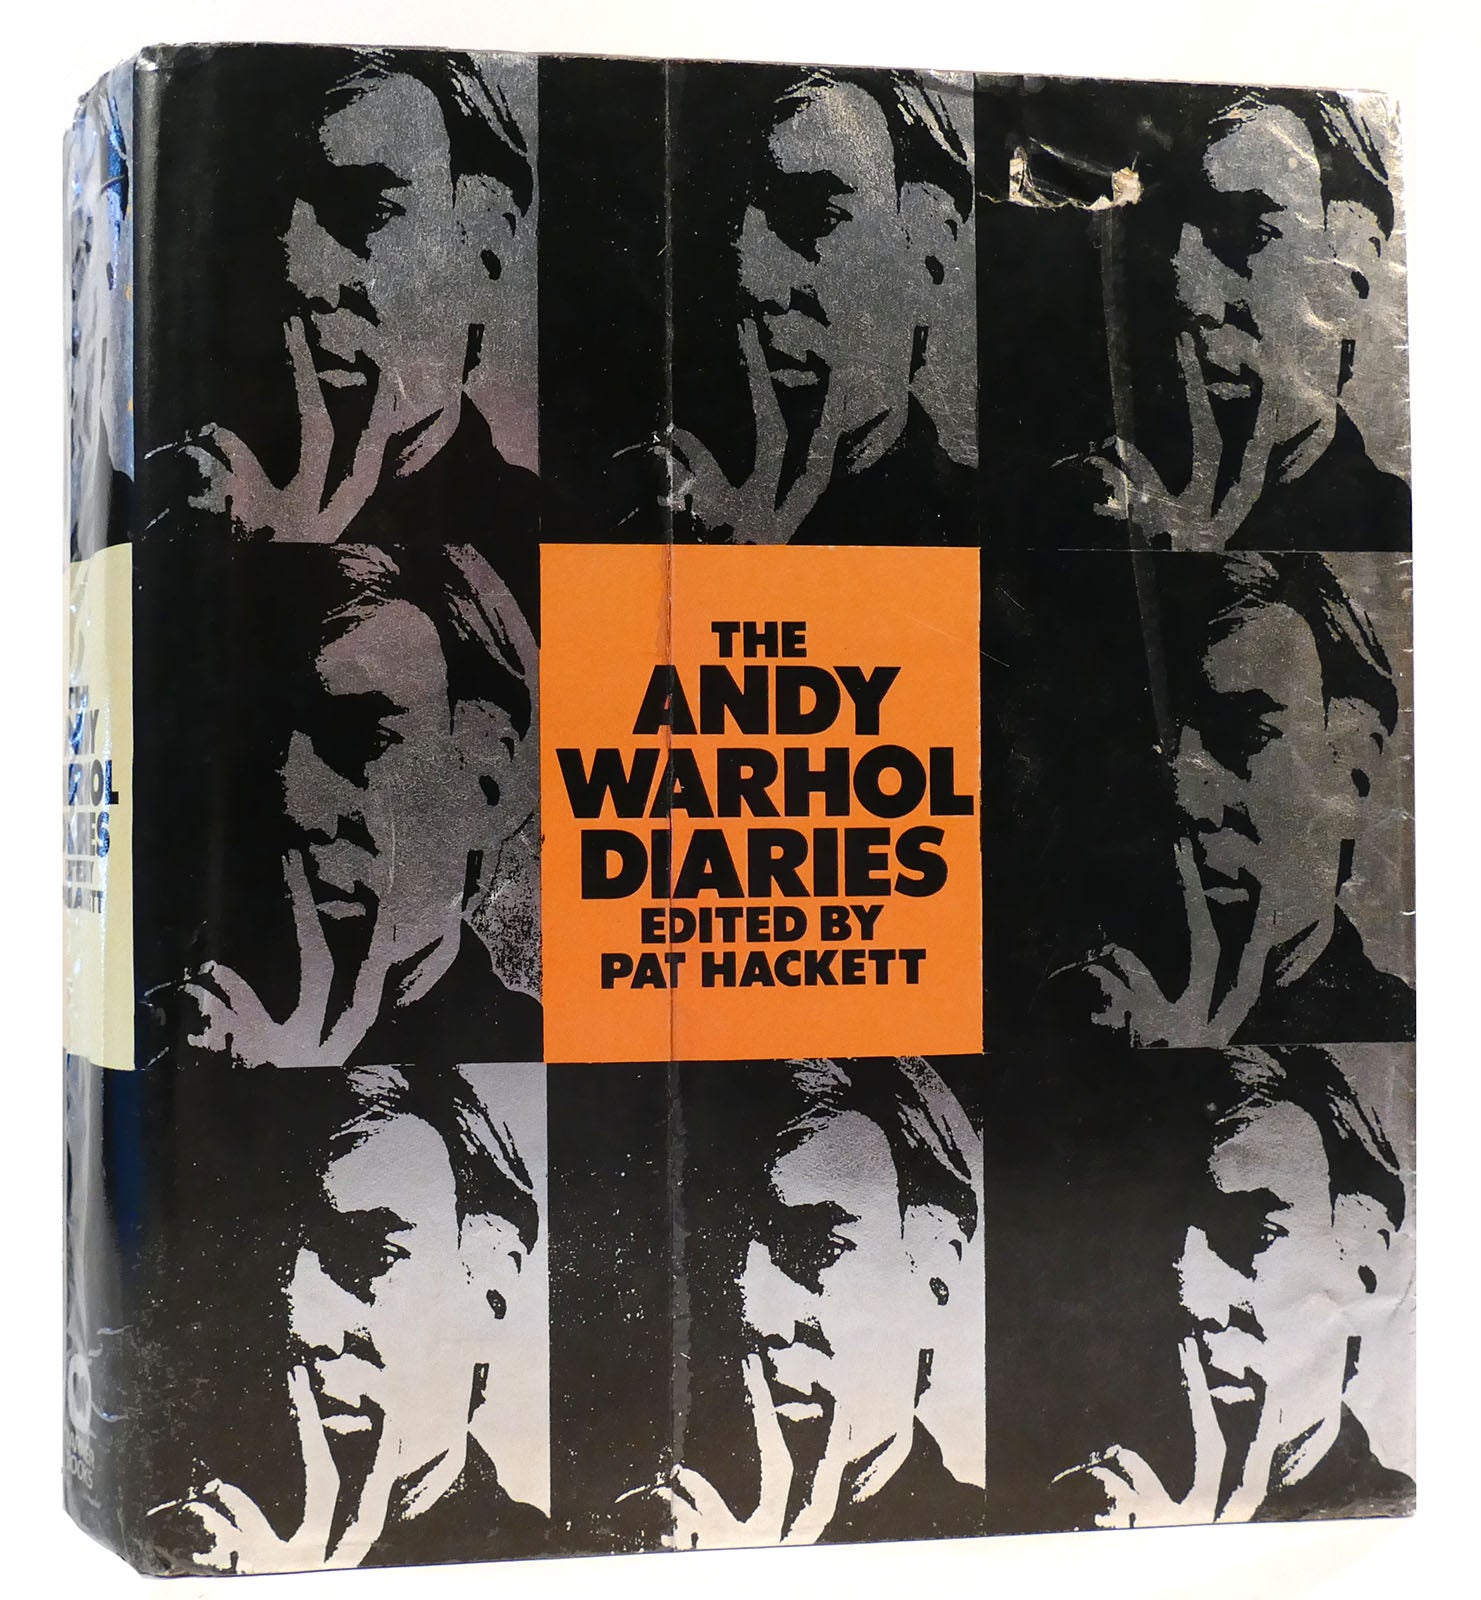 THE ANDY WARHOL DIARIES. Pat Hackett - Andy Warhol.